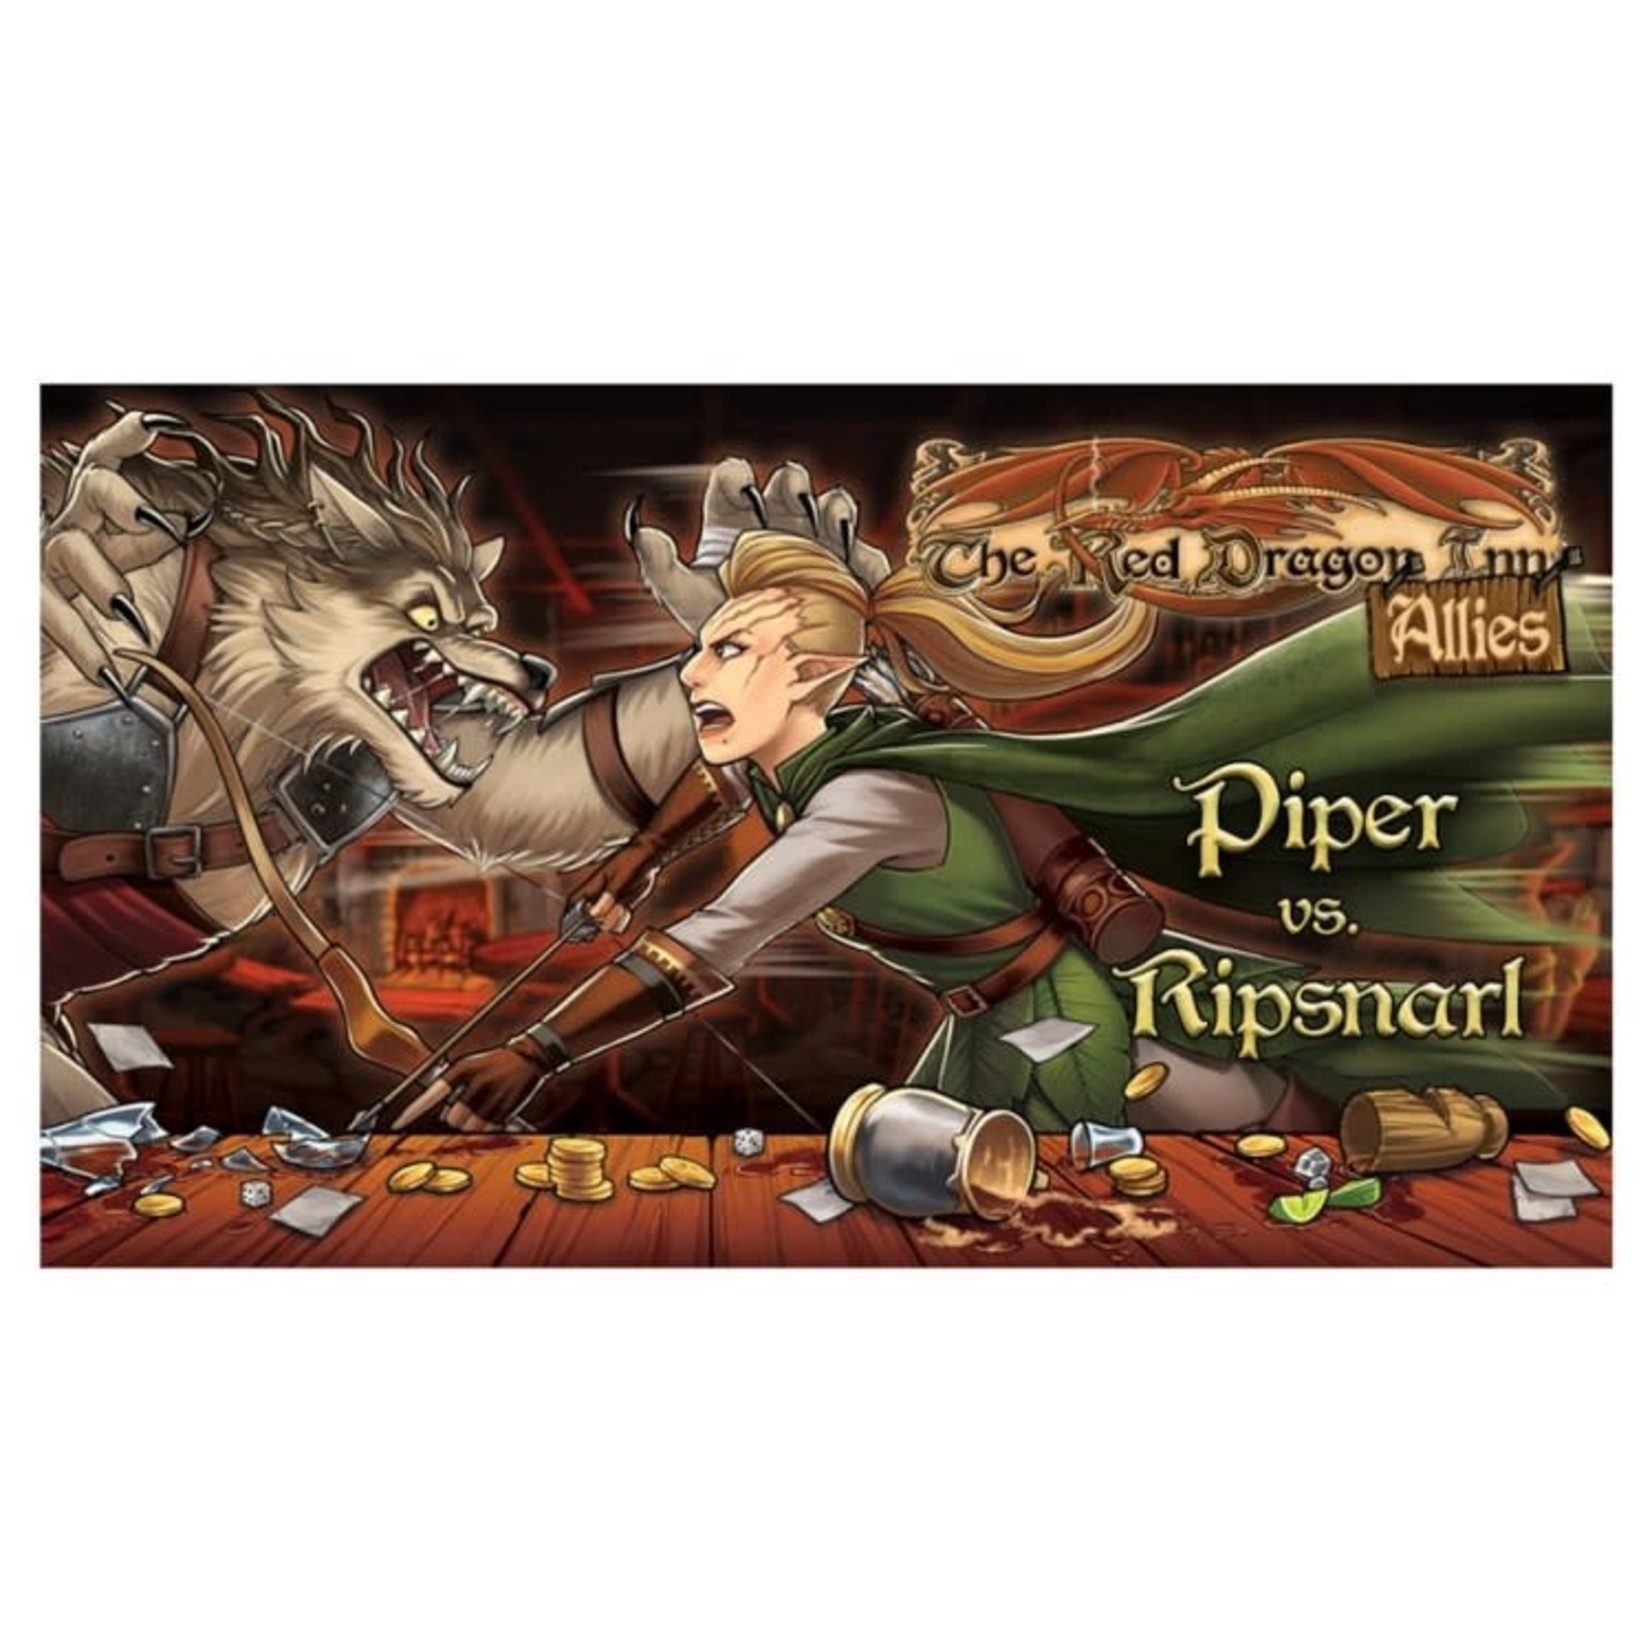 Slugfest Games Red Dragon Inn Allies Piper vs Ripsnarl